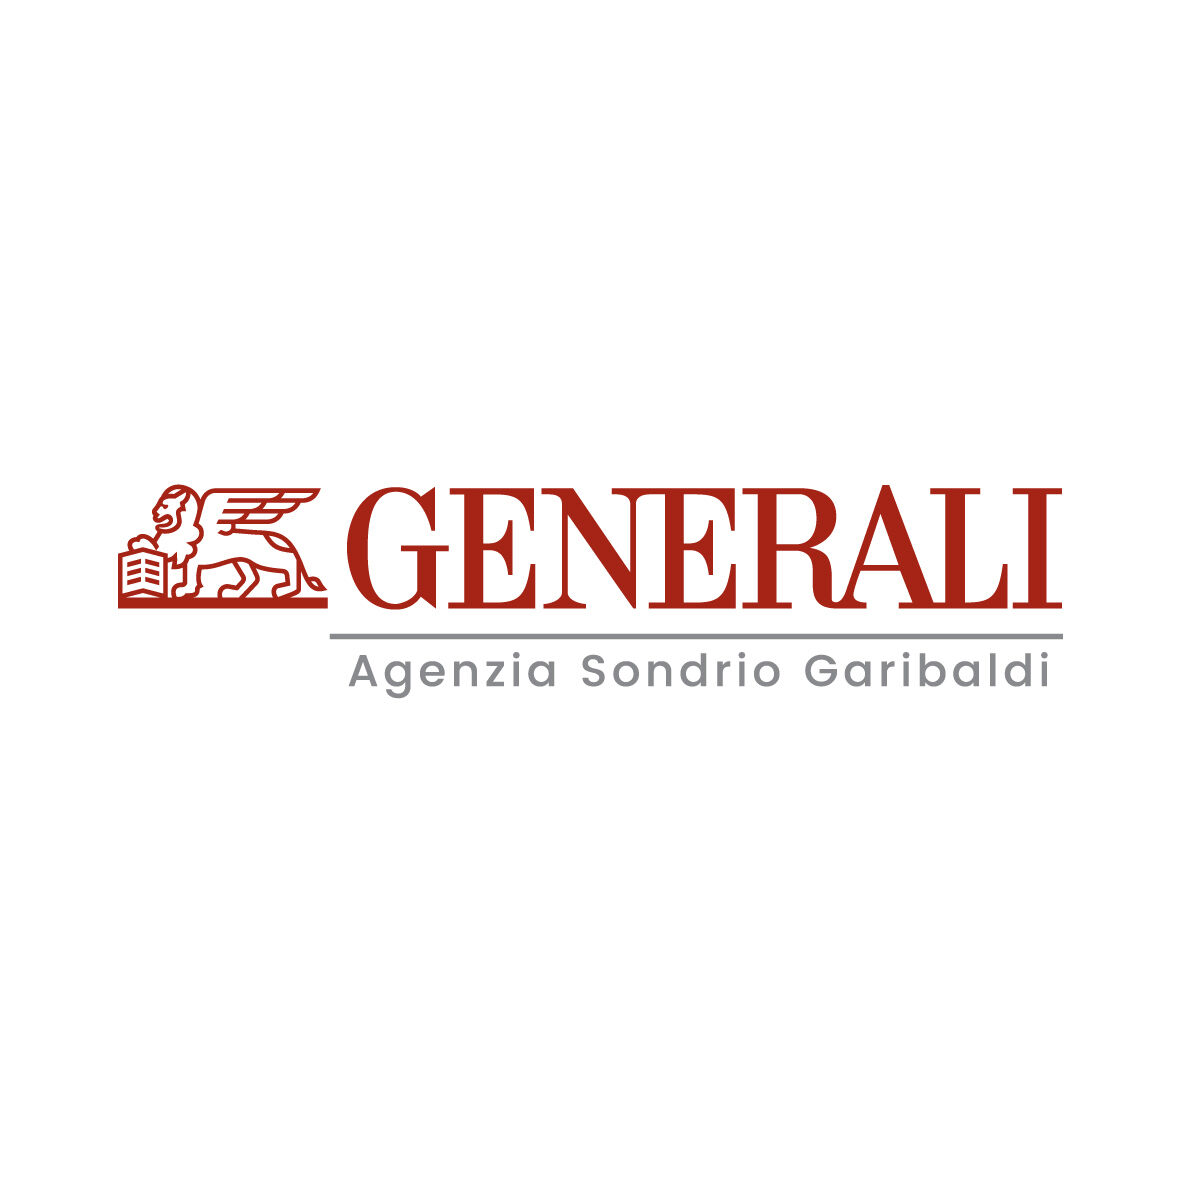 Generali - Agenzia Sondrio Garibaldi